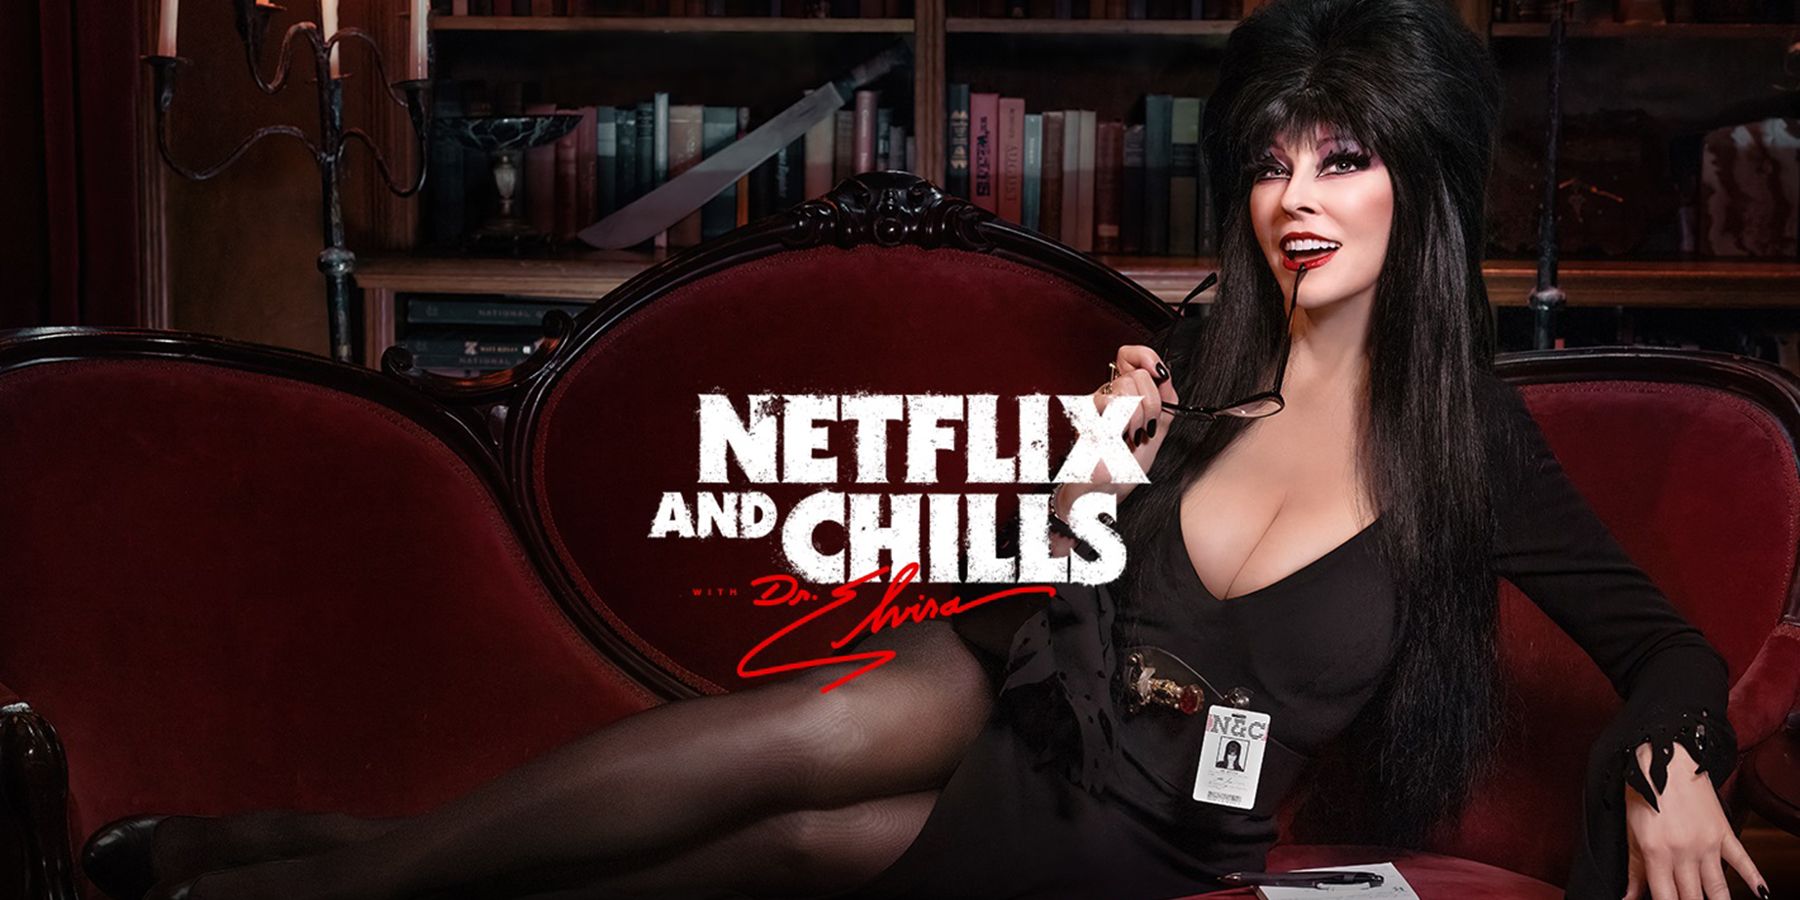 Elvira Netflix and Chills